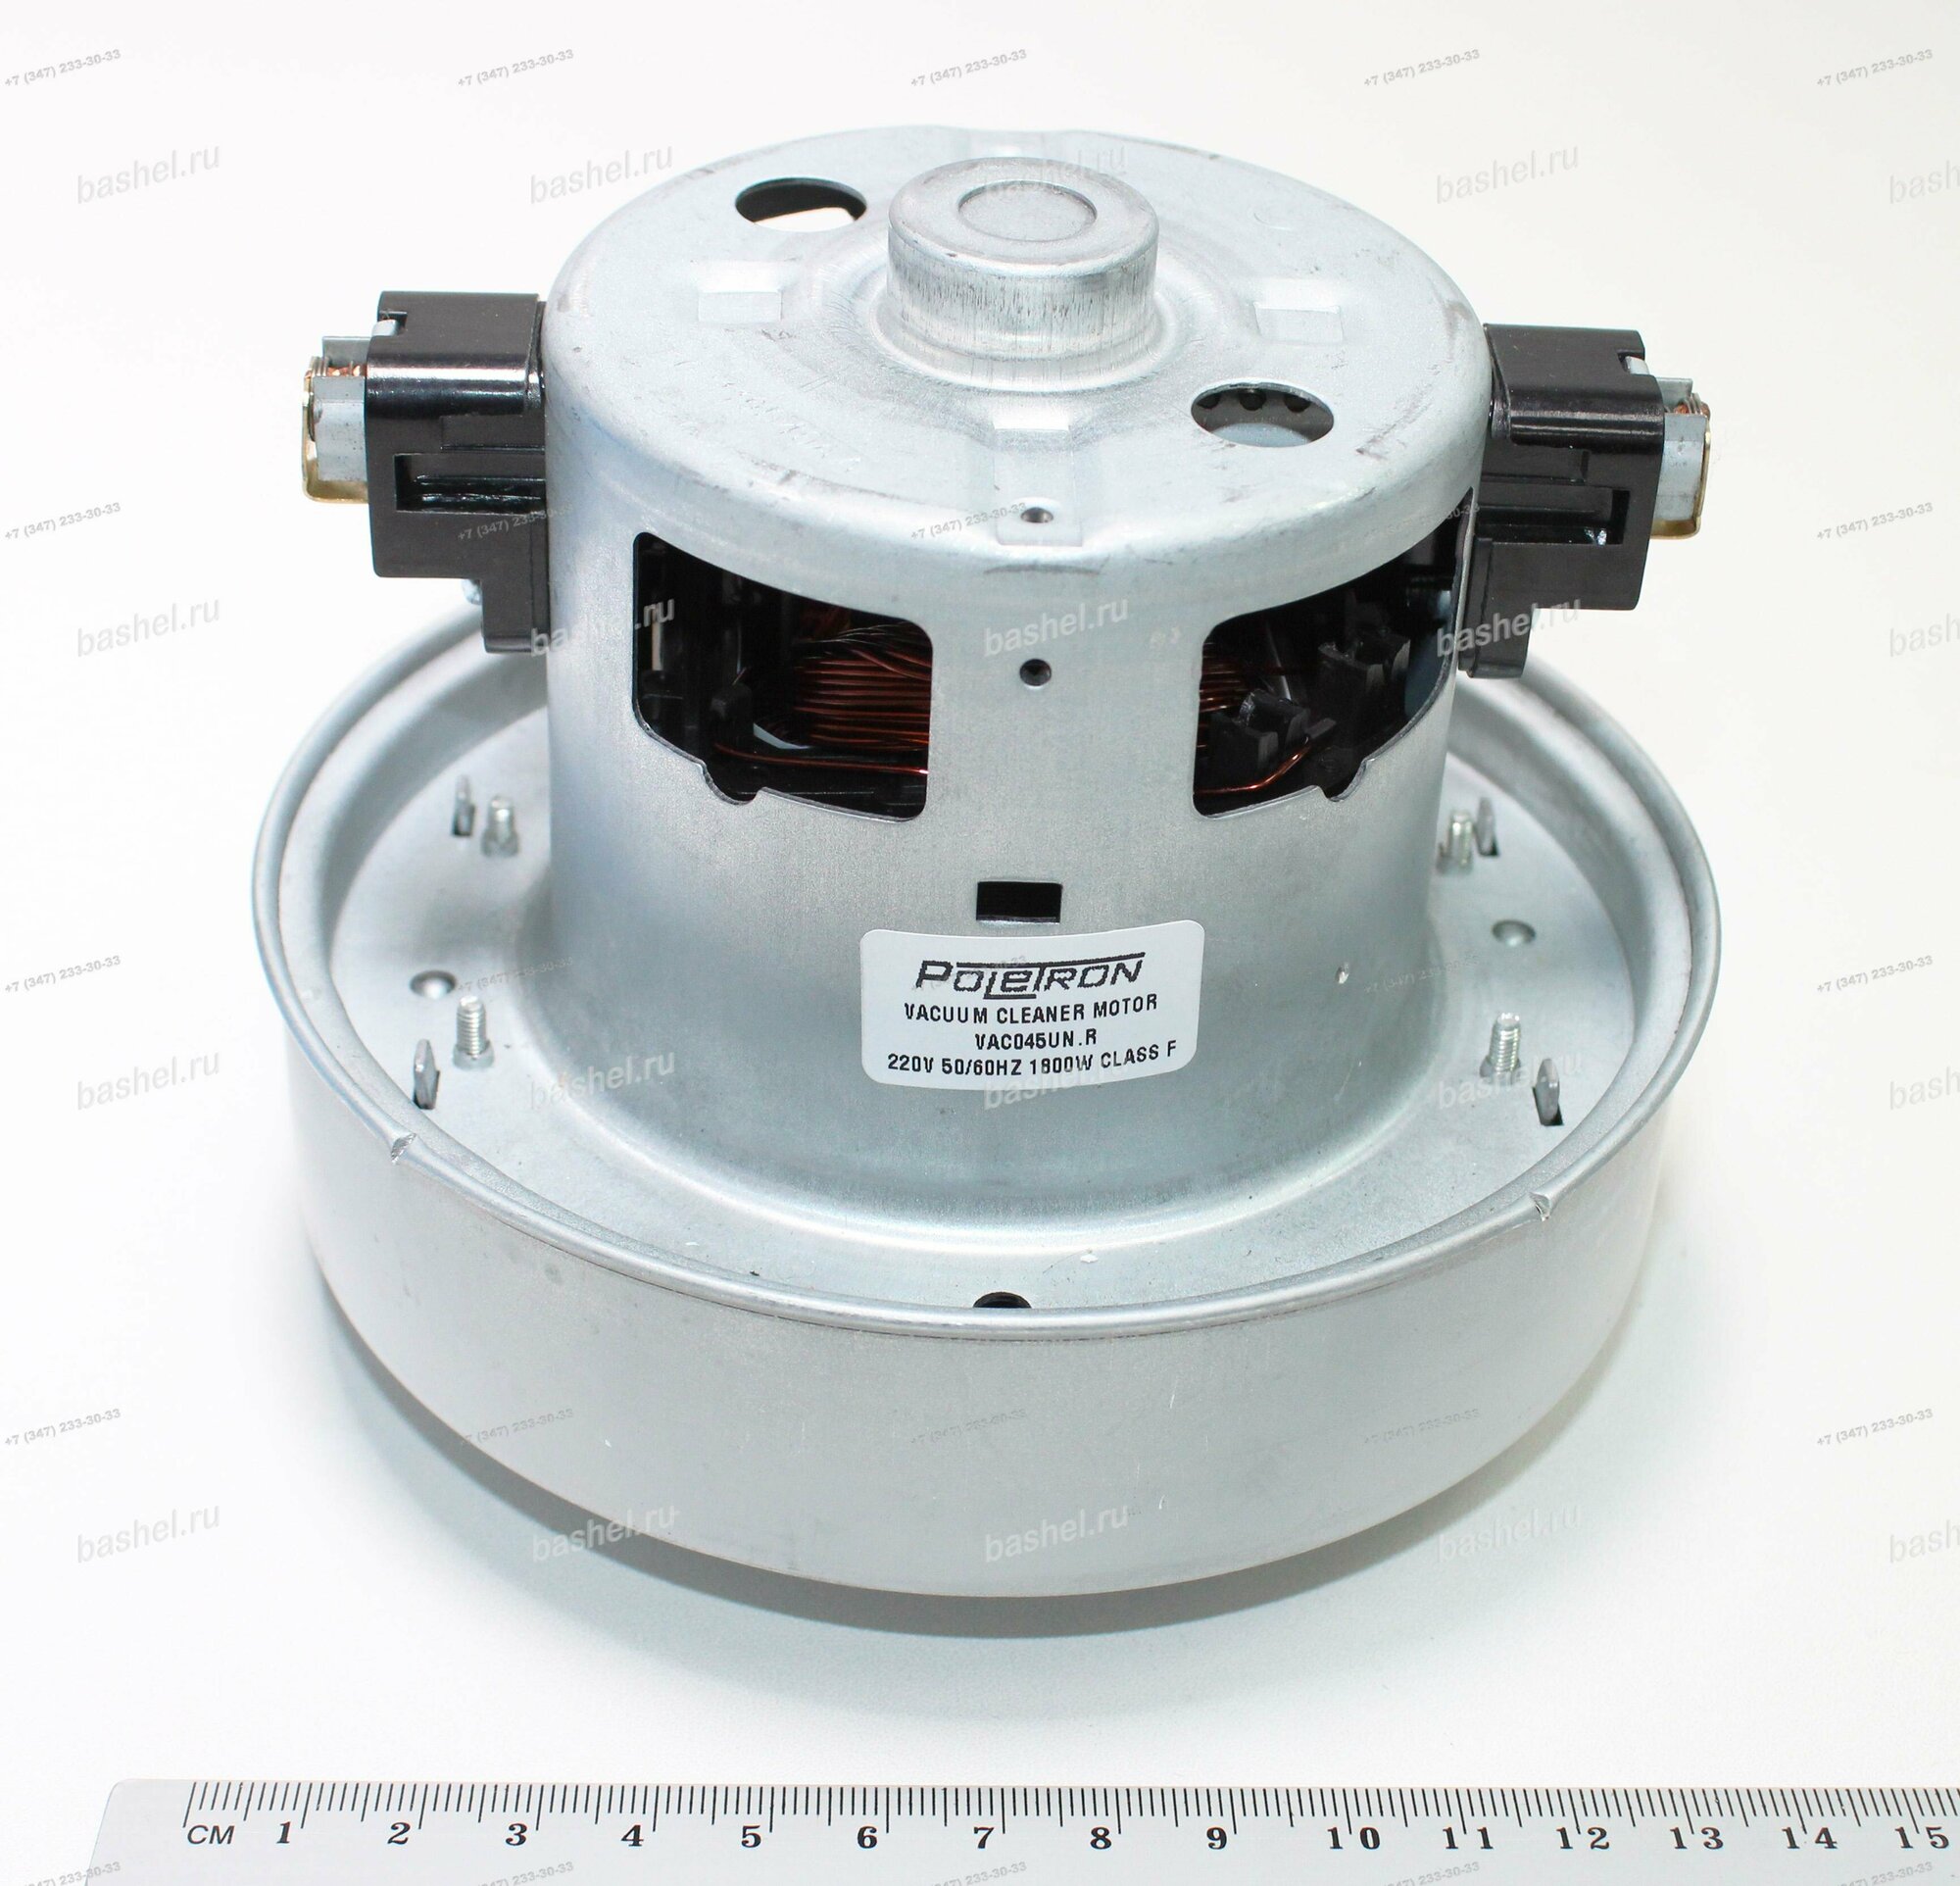 Электродвигатель для пылесоса 1800W Samsung VAC045UN. R H-118, h-50, D-139 (с упорным кольцом), Poletron электротовар